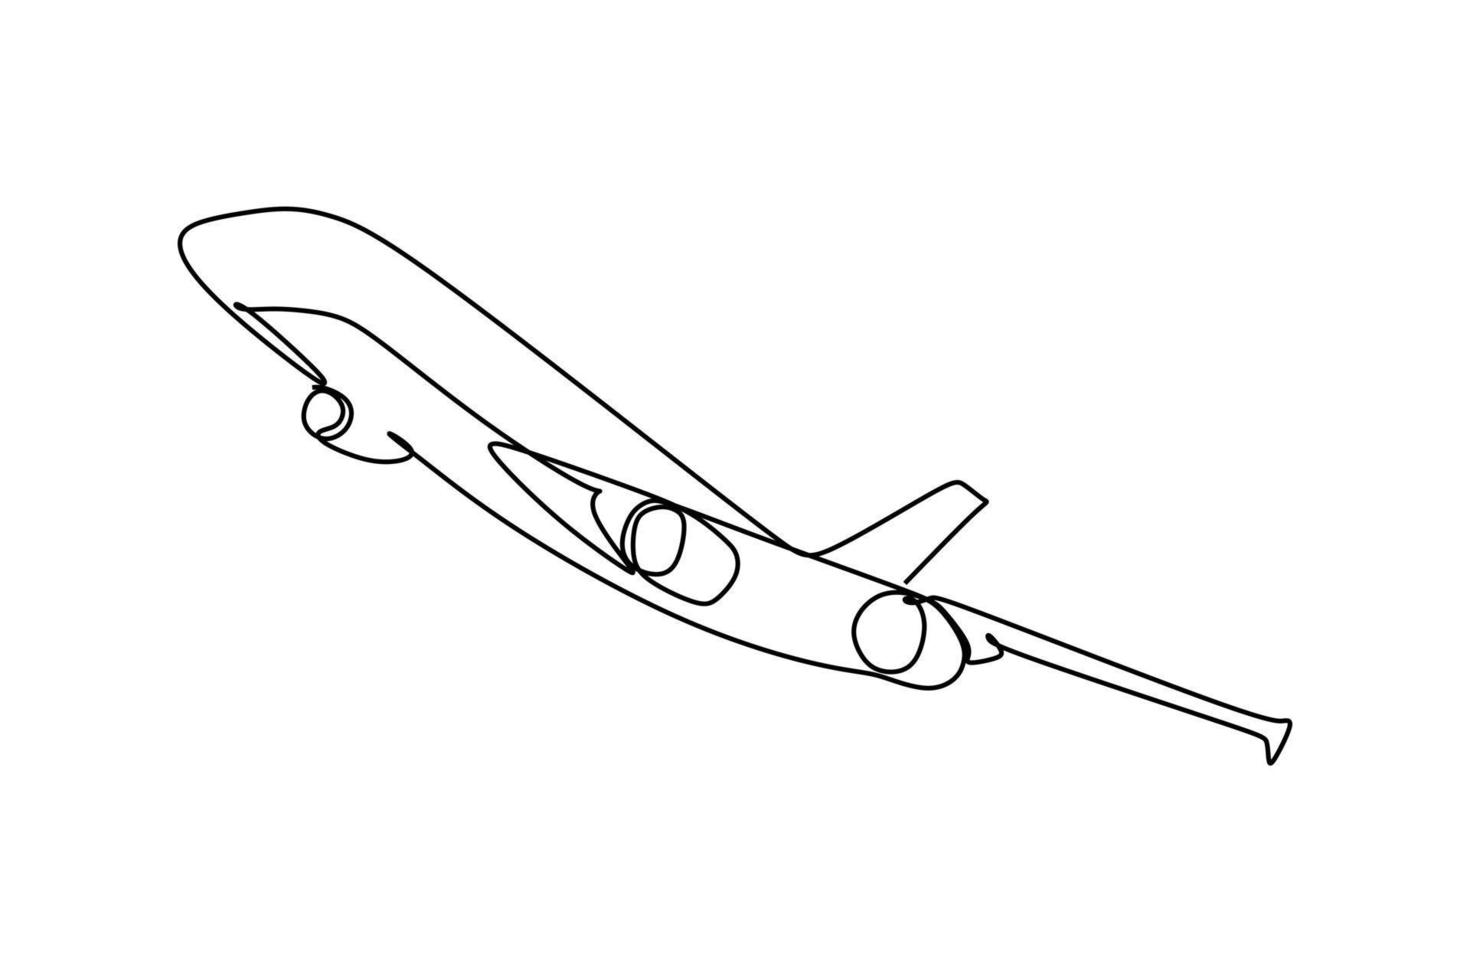 enkele doorlopende lijntekening van een vliegtuig dat vliegt en klimt. handtekeningstijl voor transportconcept vector